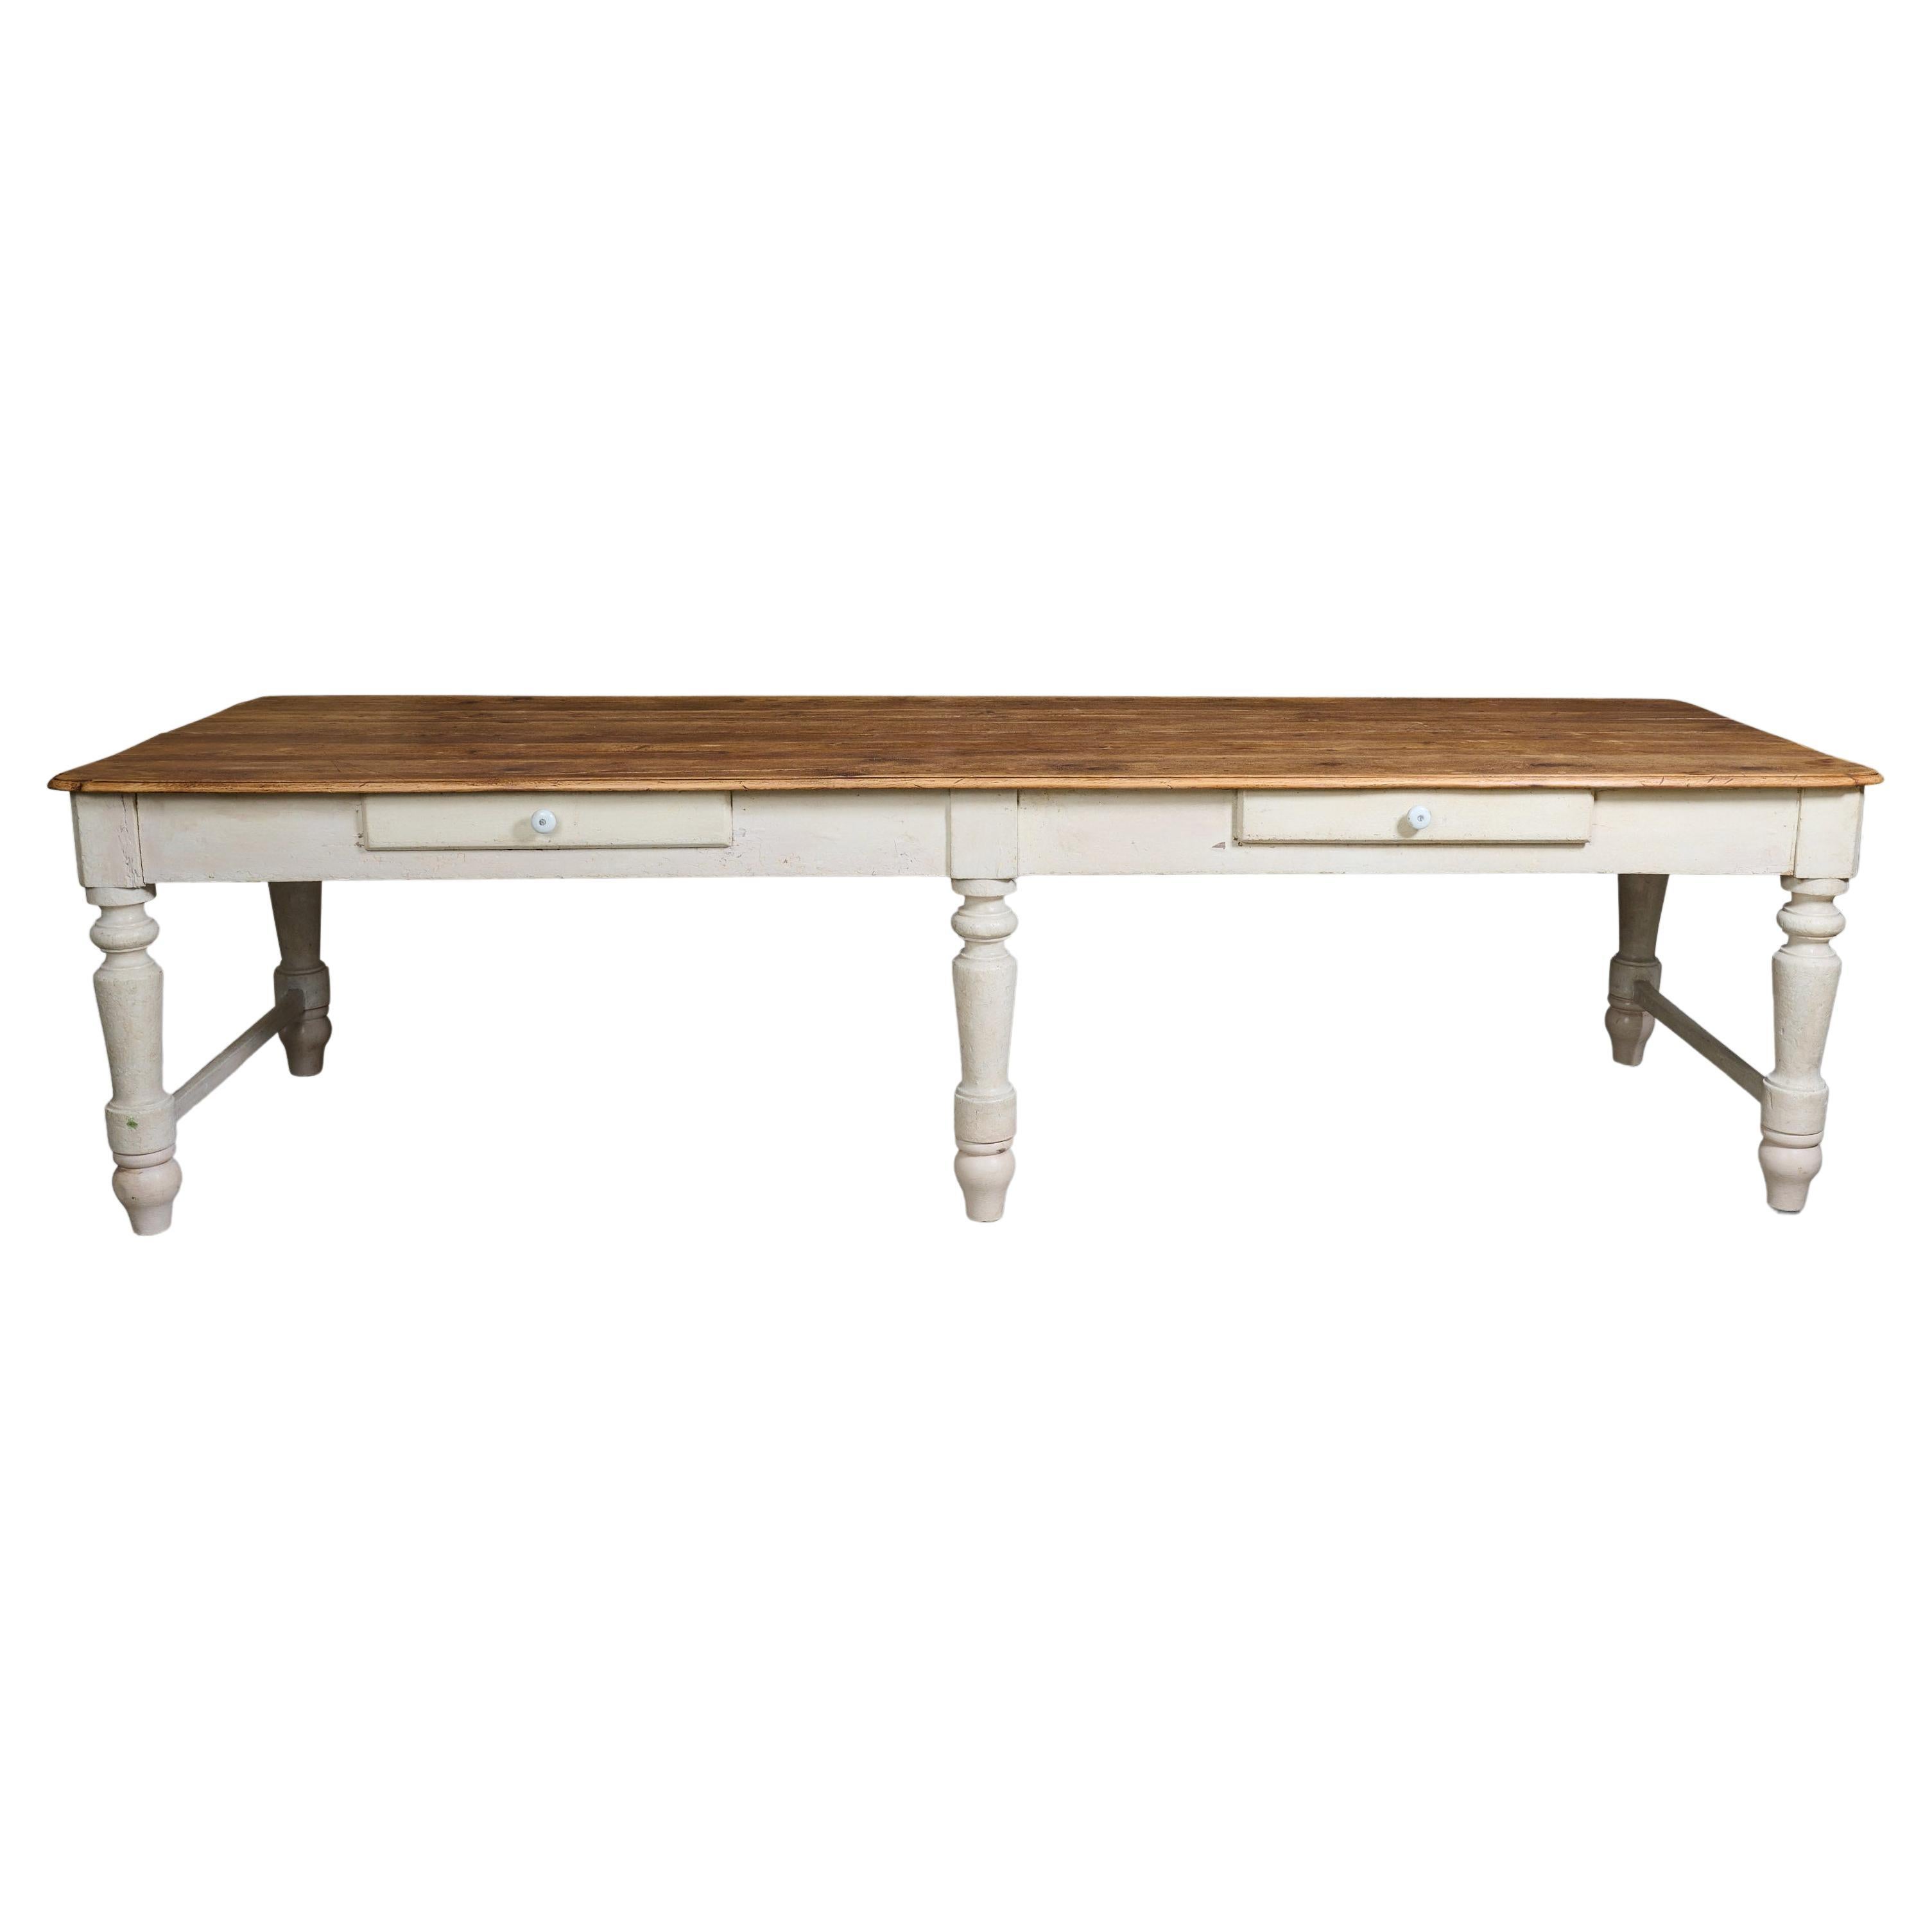 Six Leg Table / Desk For Sale